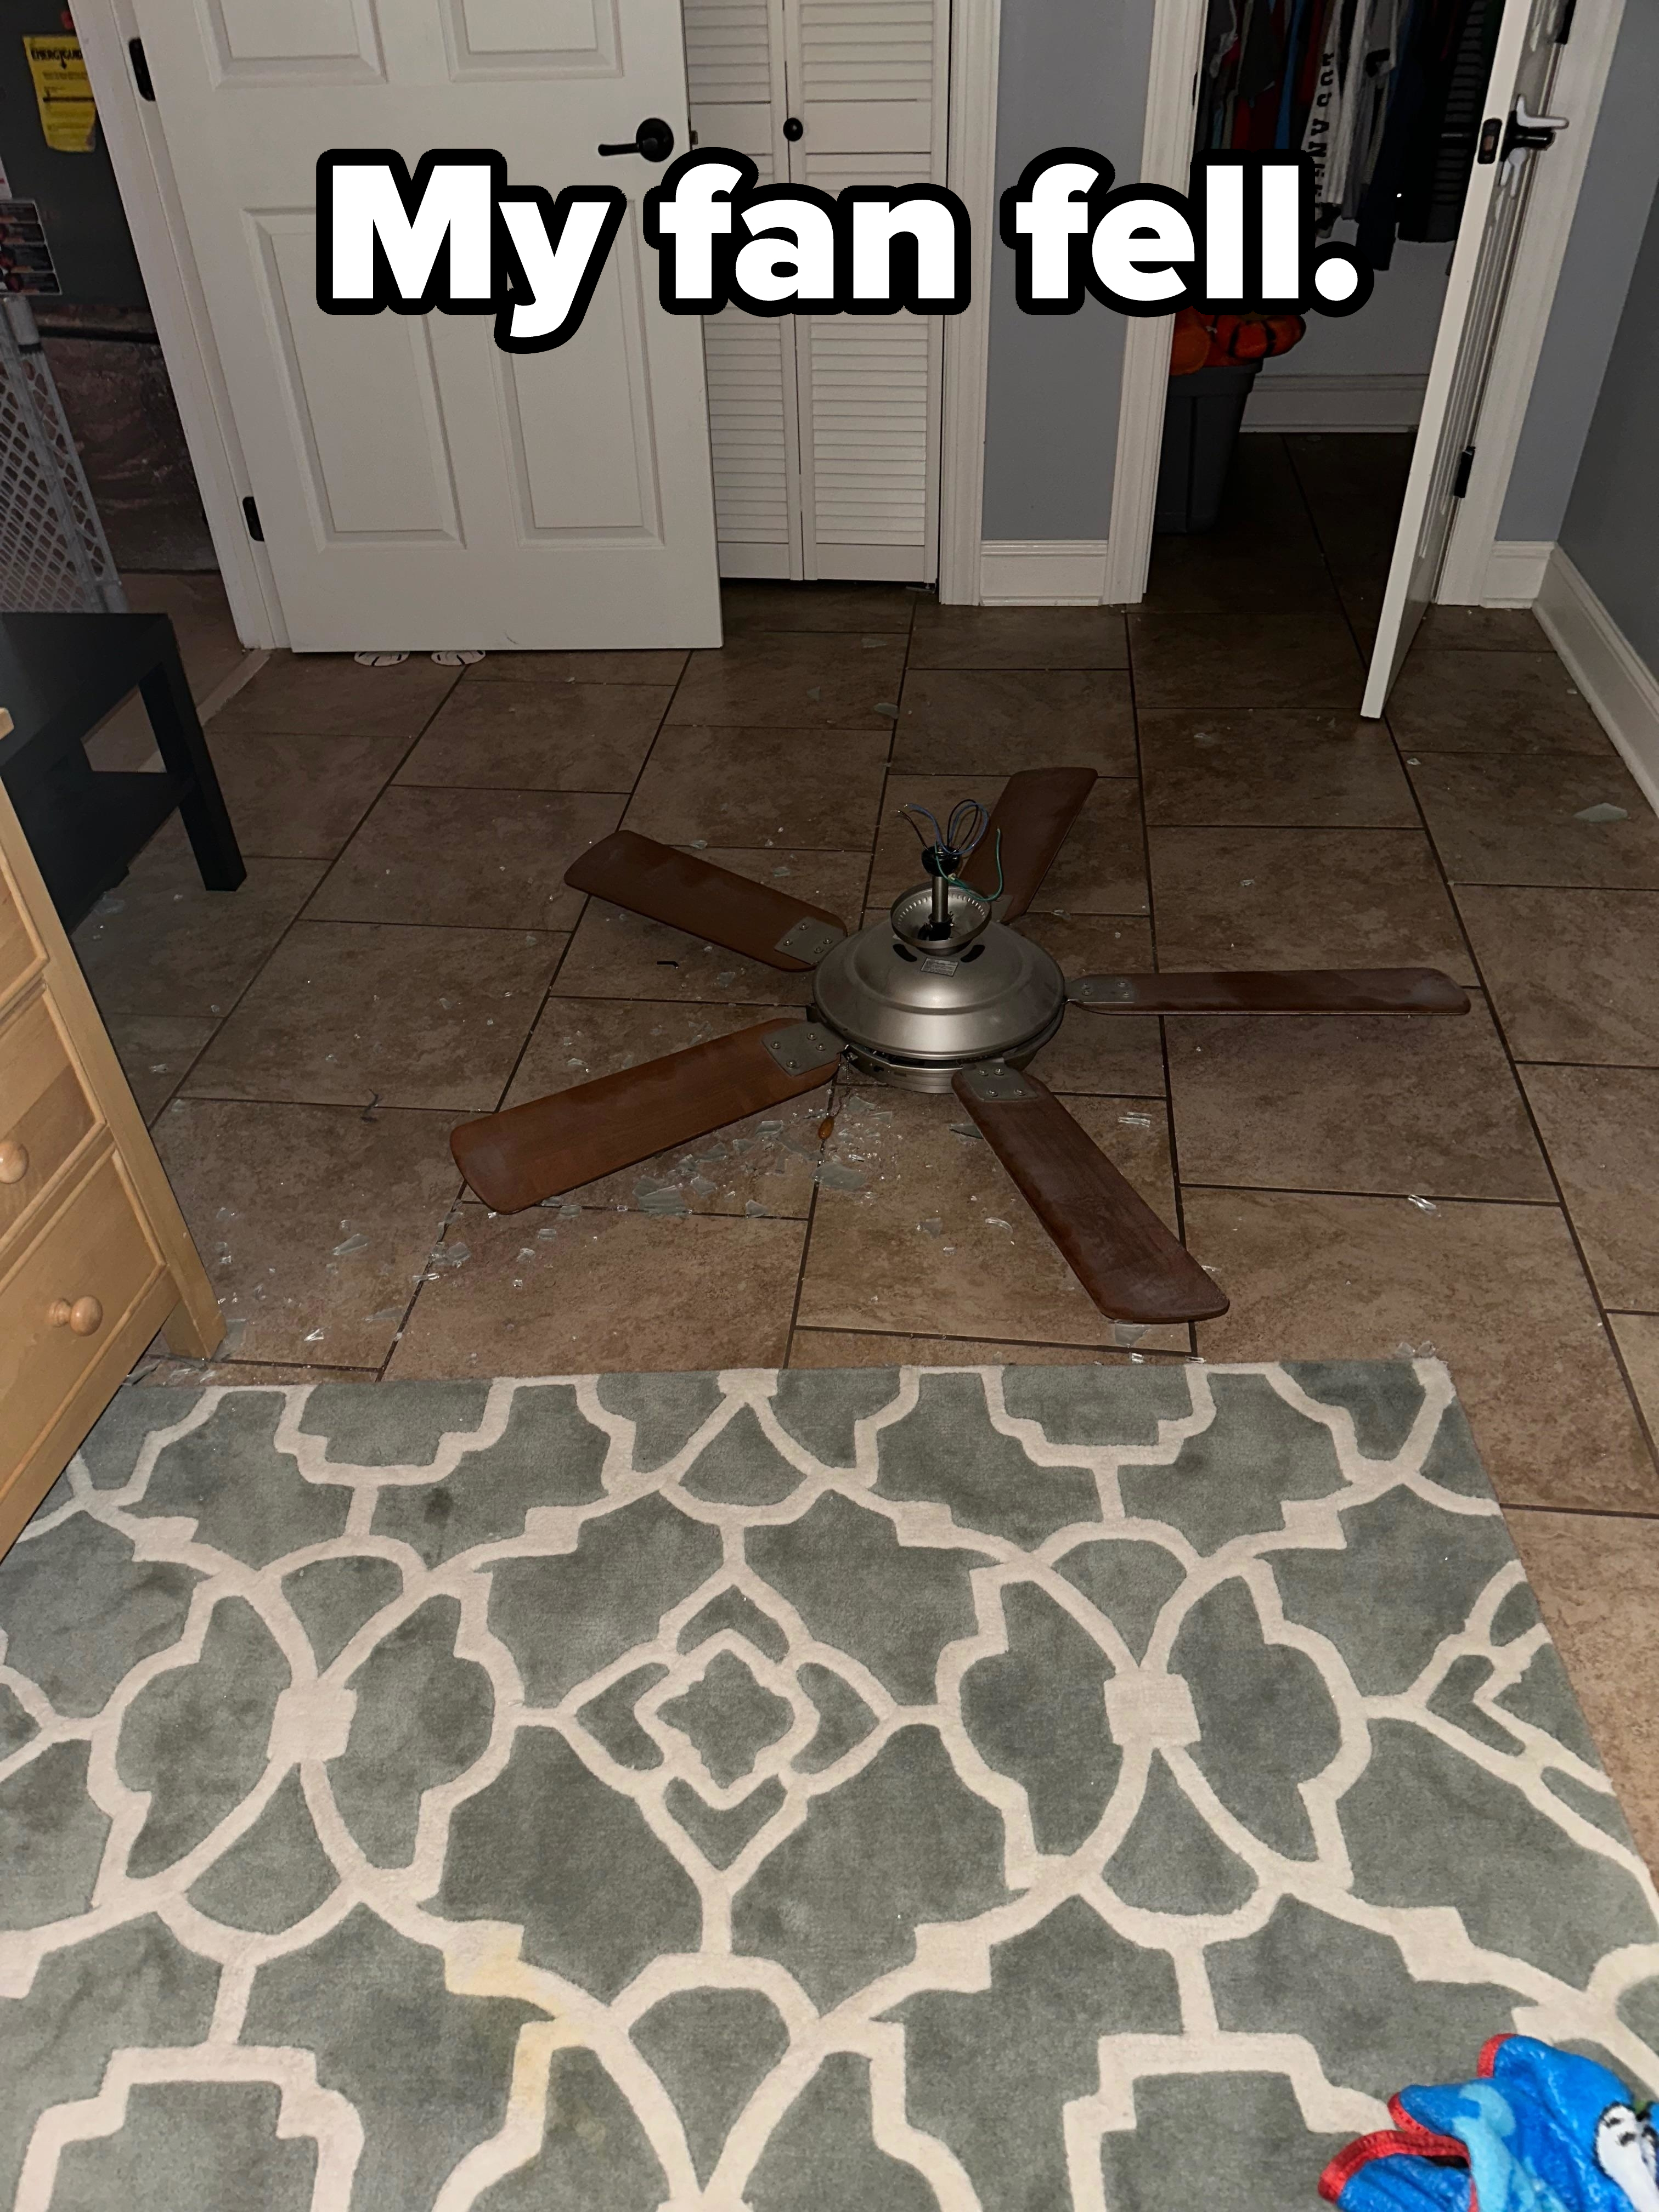 &quot;My fan fell.&quot;